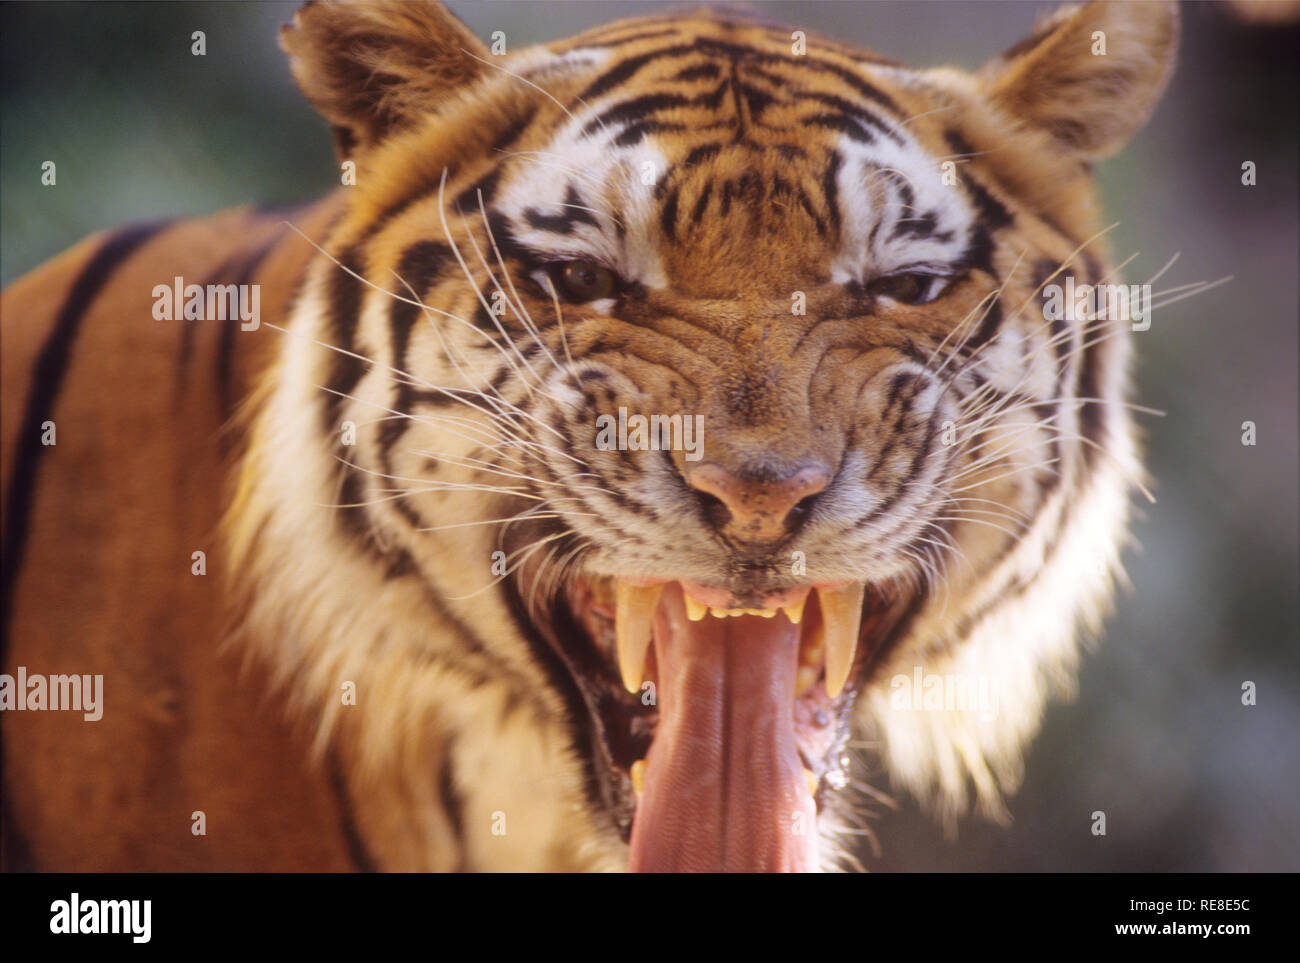 Tiger, die größten Katze auf der Welt lebt in Asien, in Ländern wie Indien, China, Russland etc. Stockfoto